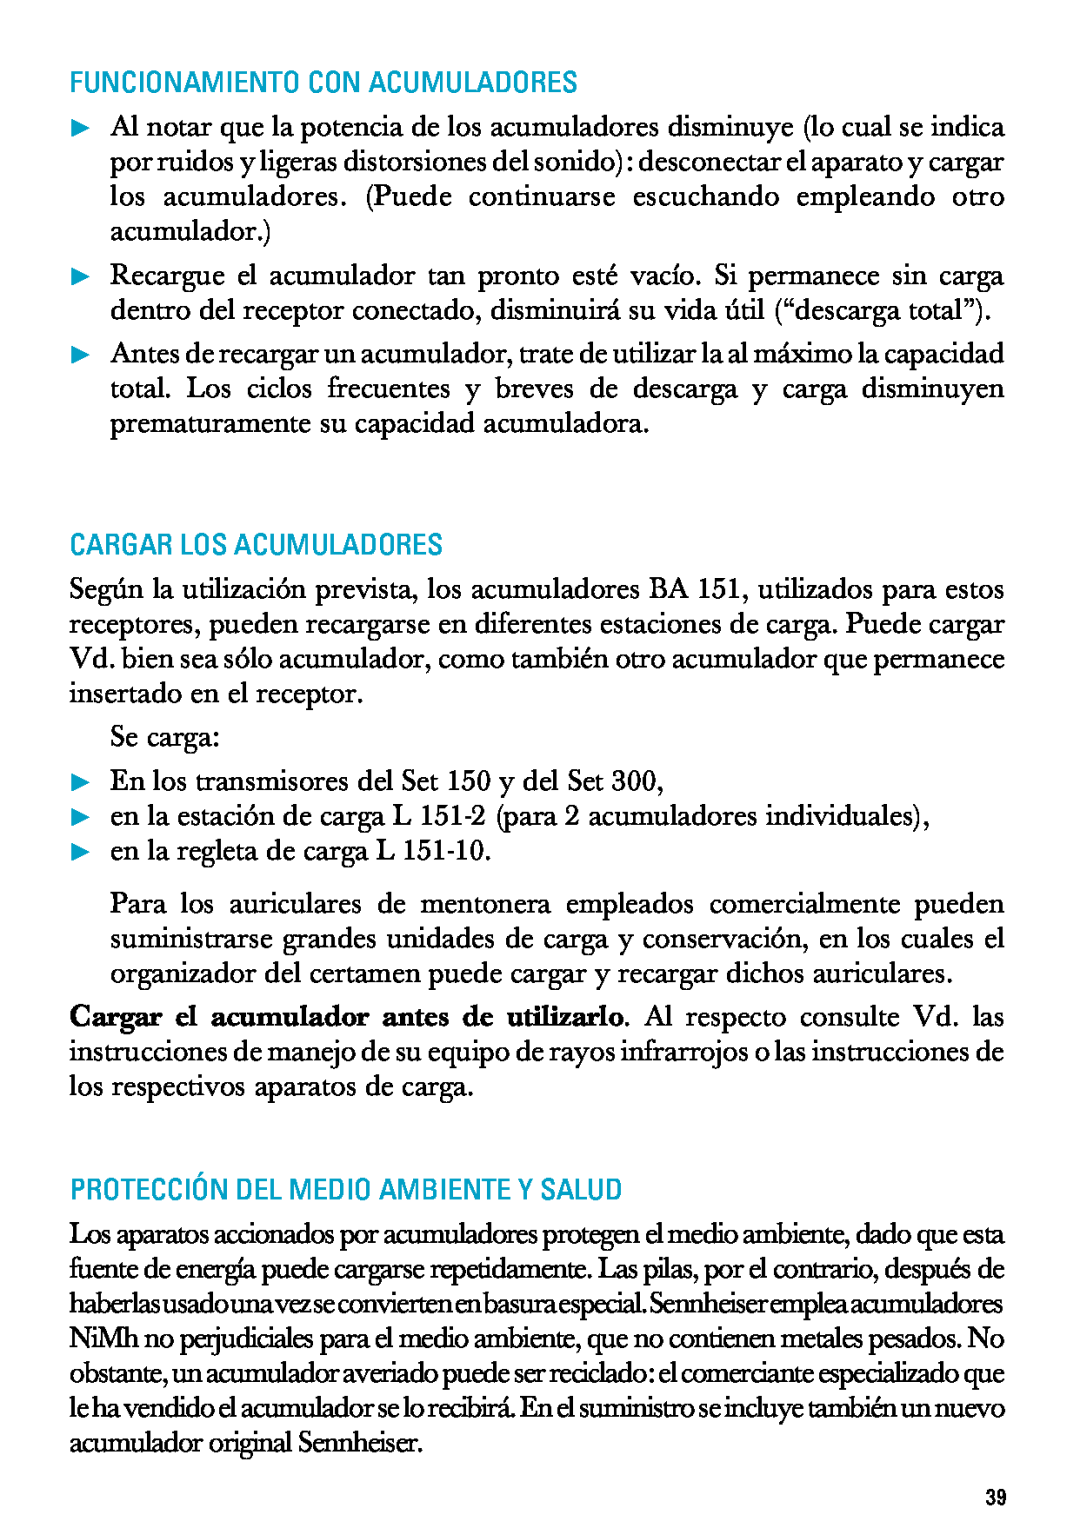 Sennheiser RI 300 manual Funcionamiento Con Acumuladores, Cargar Los Acumuladores, Protección Del Medio Ambiente Y Salud 